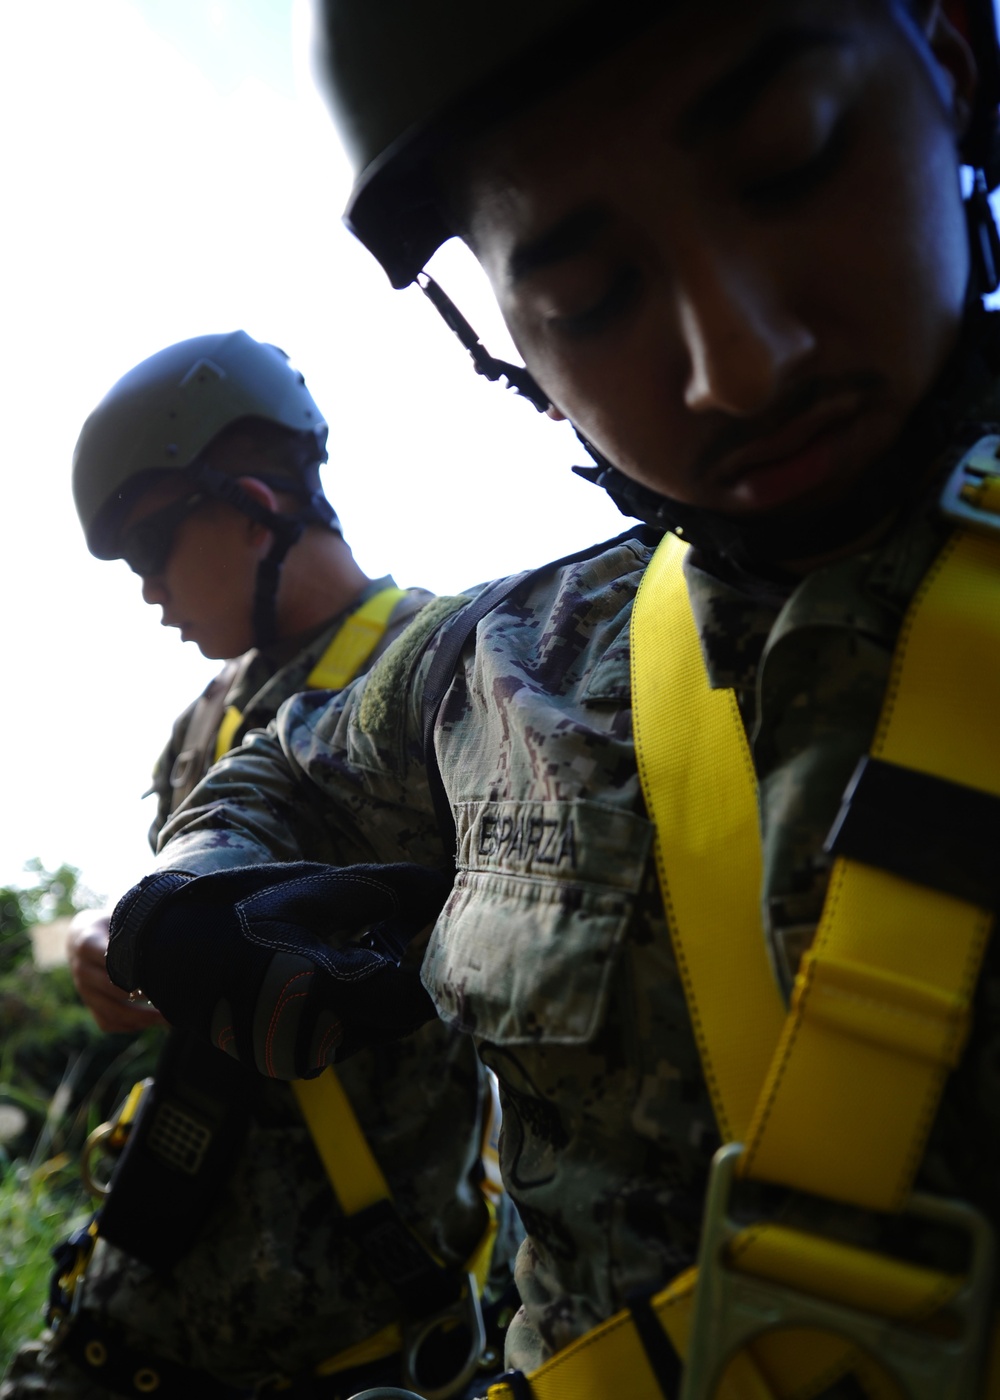 Seabees rescue Heshikiya community from boulder